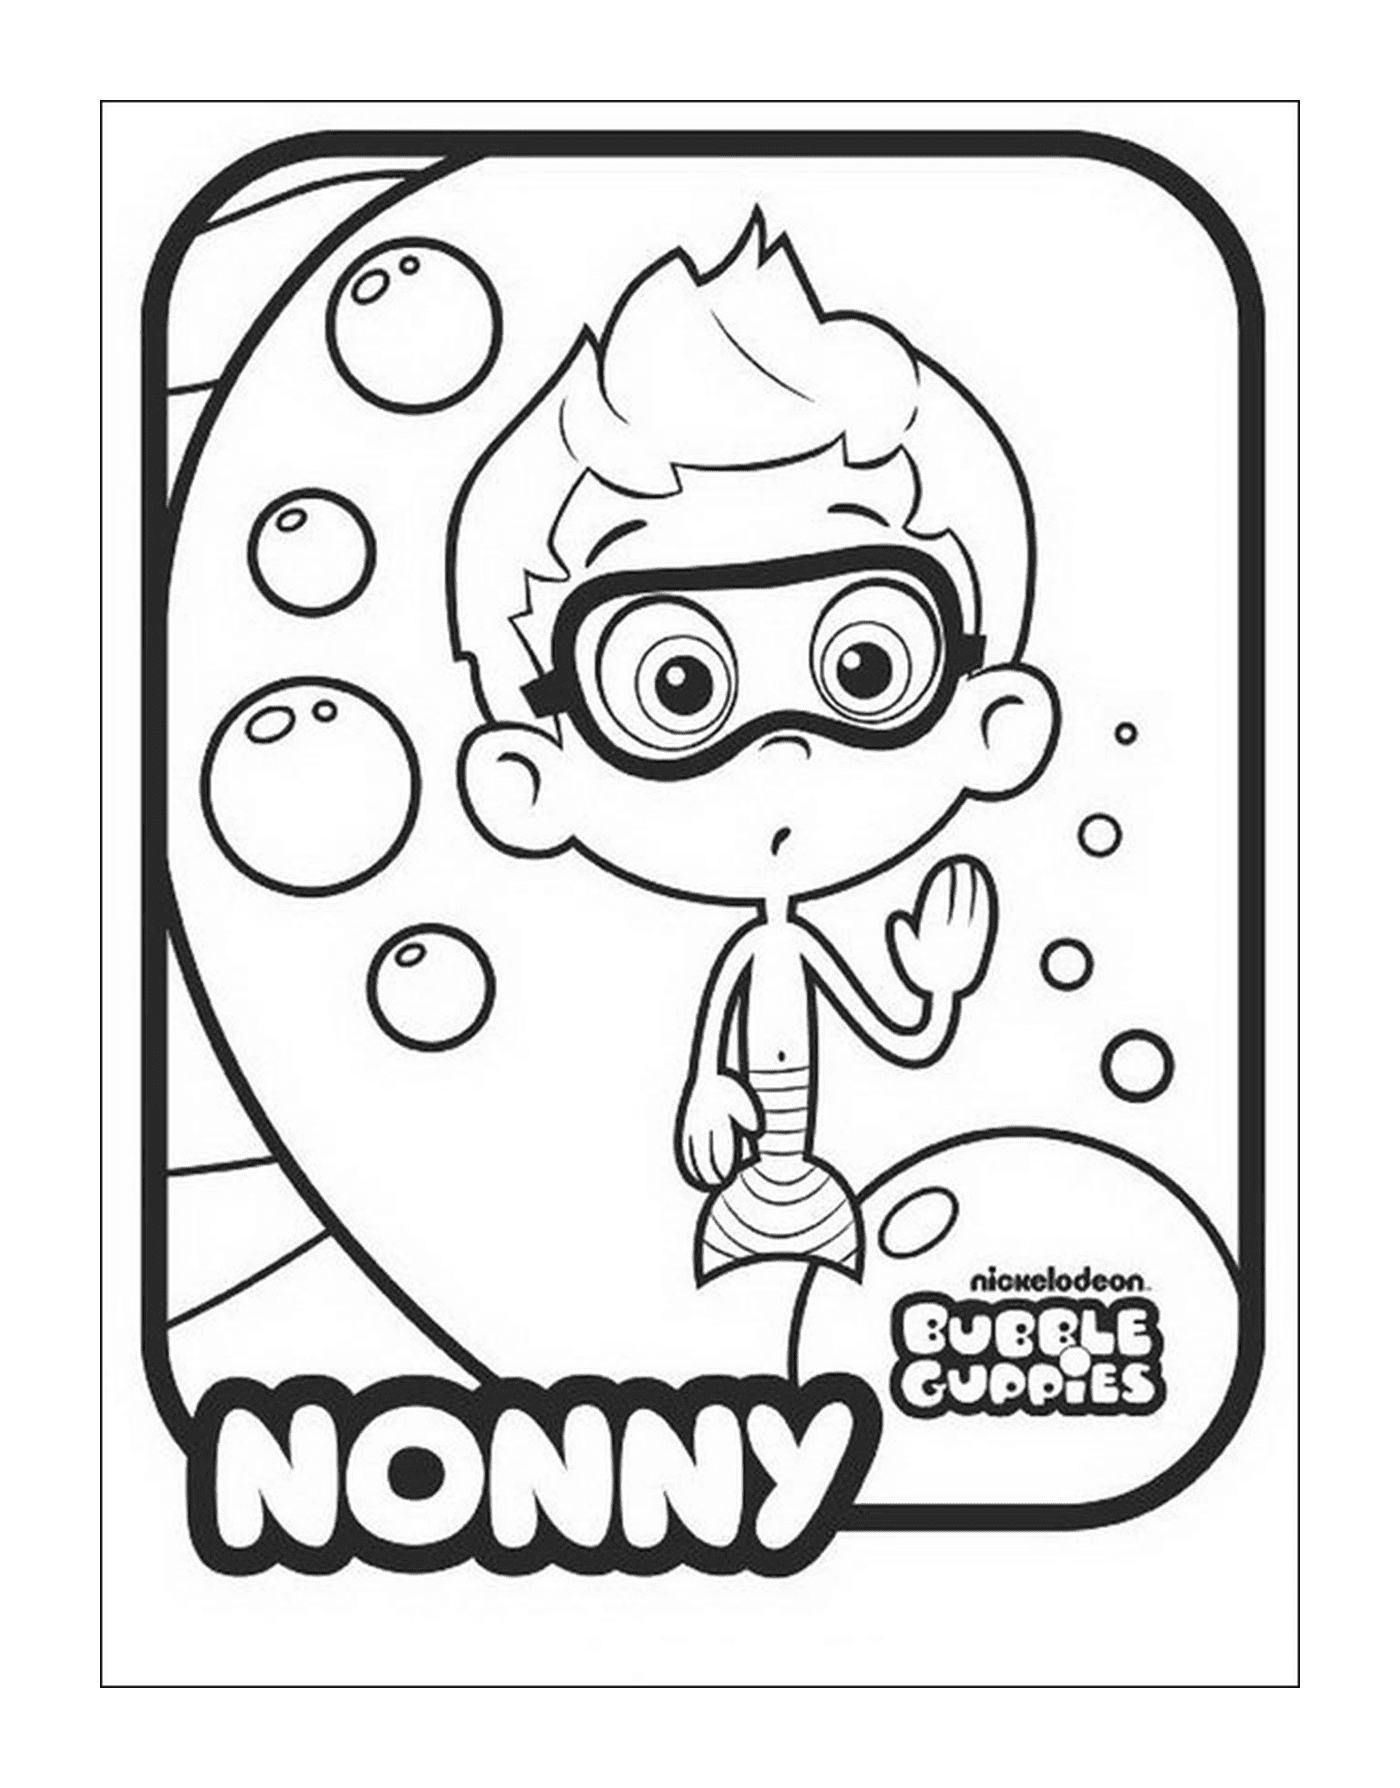   Nonny des Bubble Guppies 